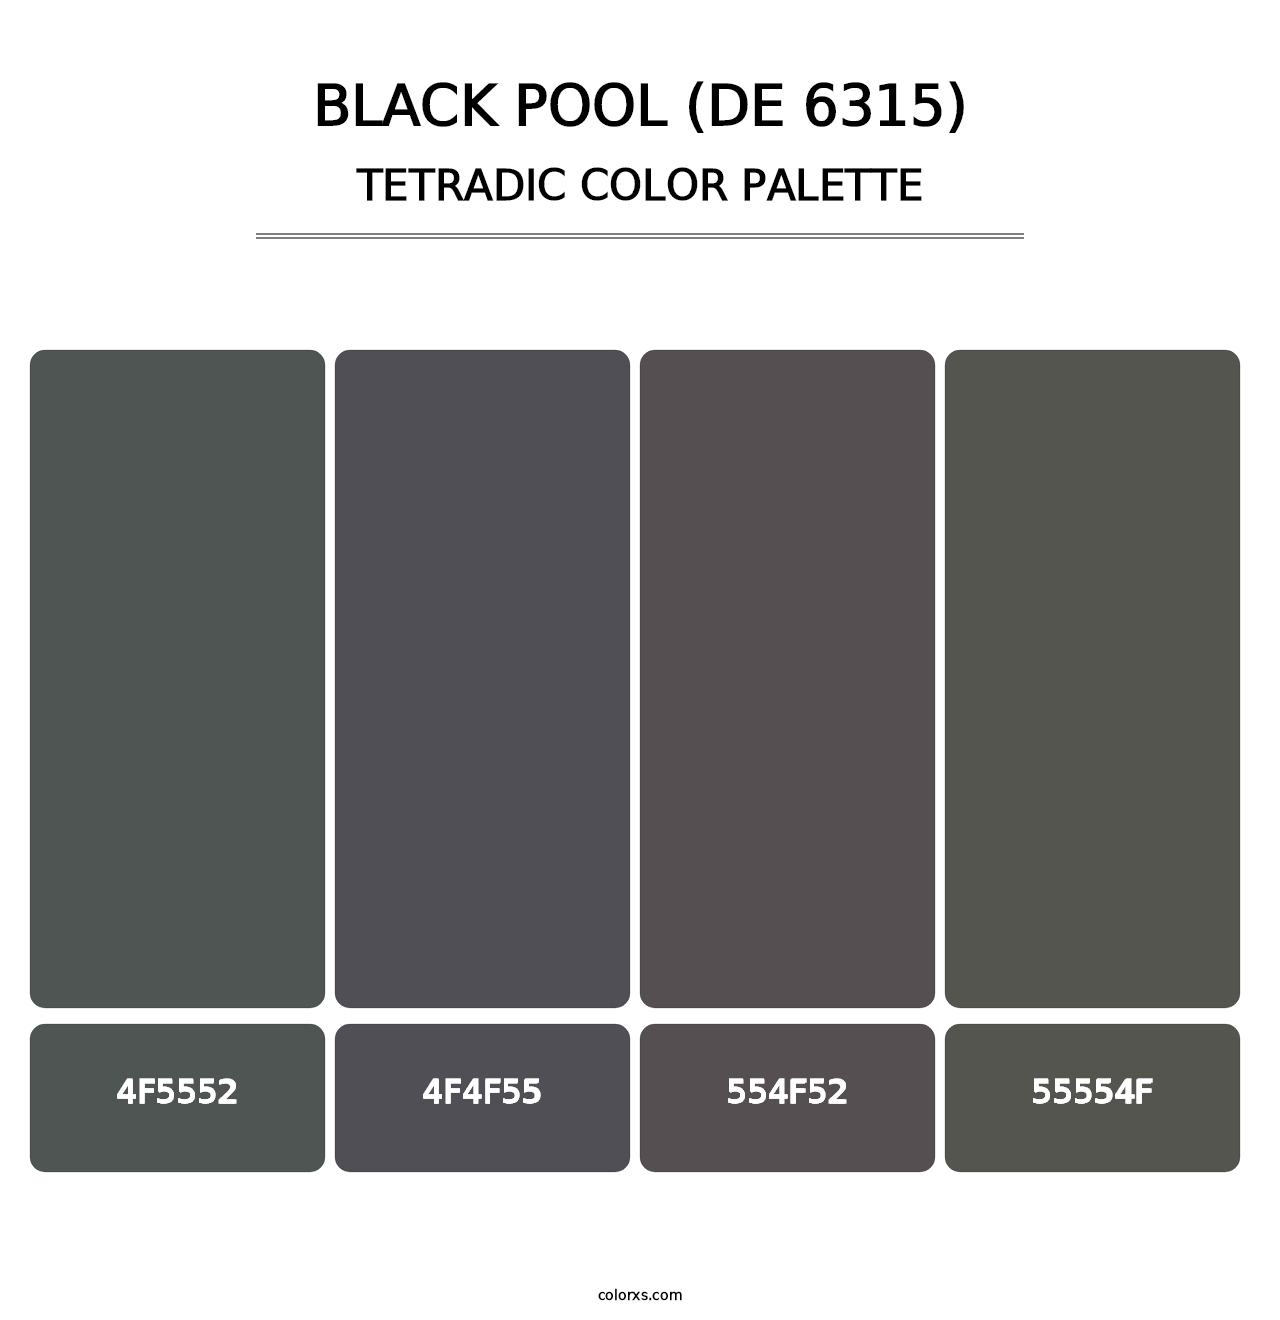 Black Pool (DE 6315) - Tetradic Color Palette